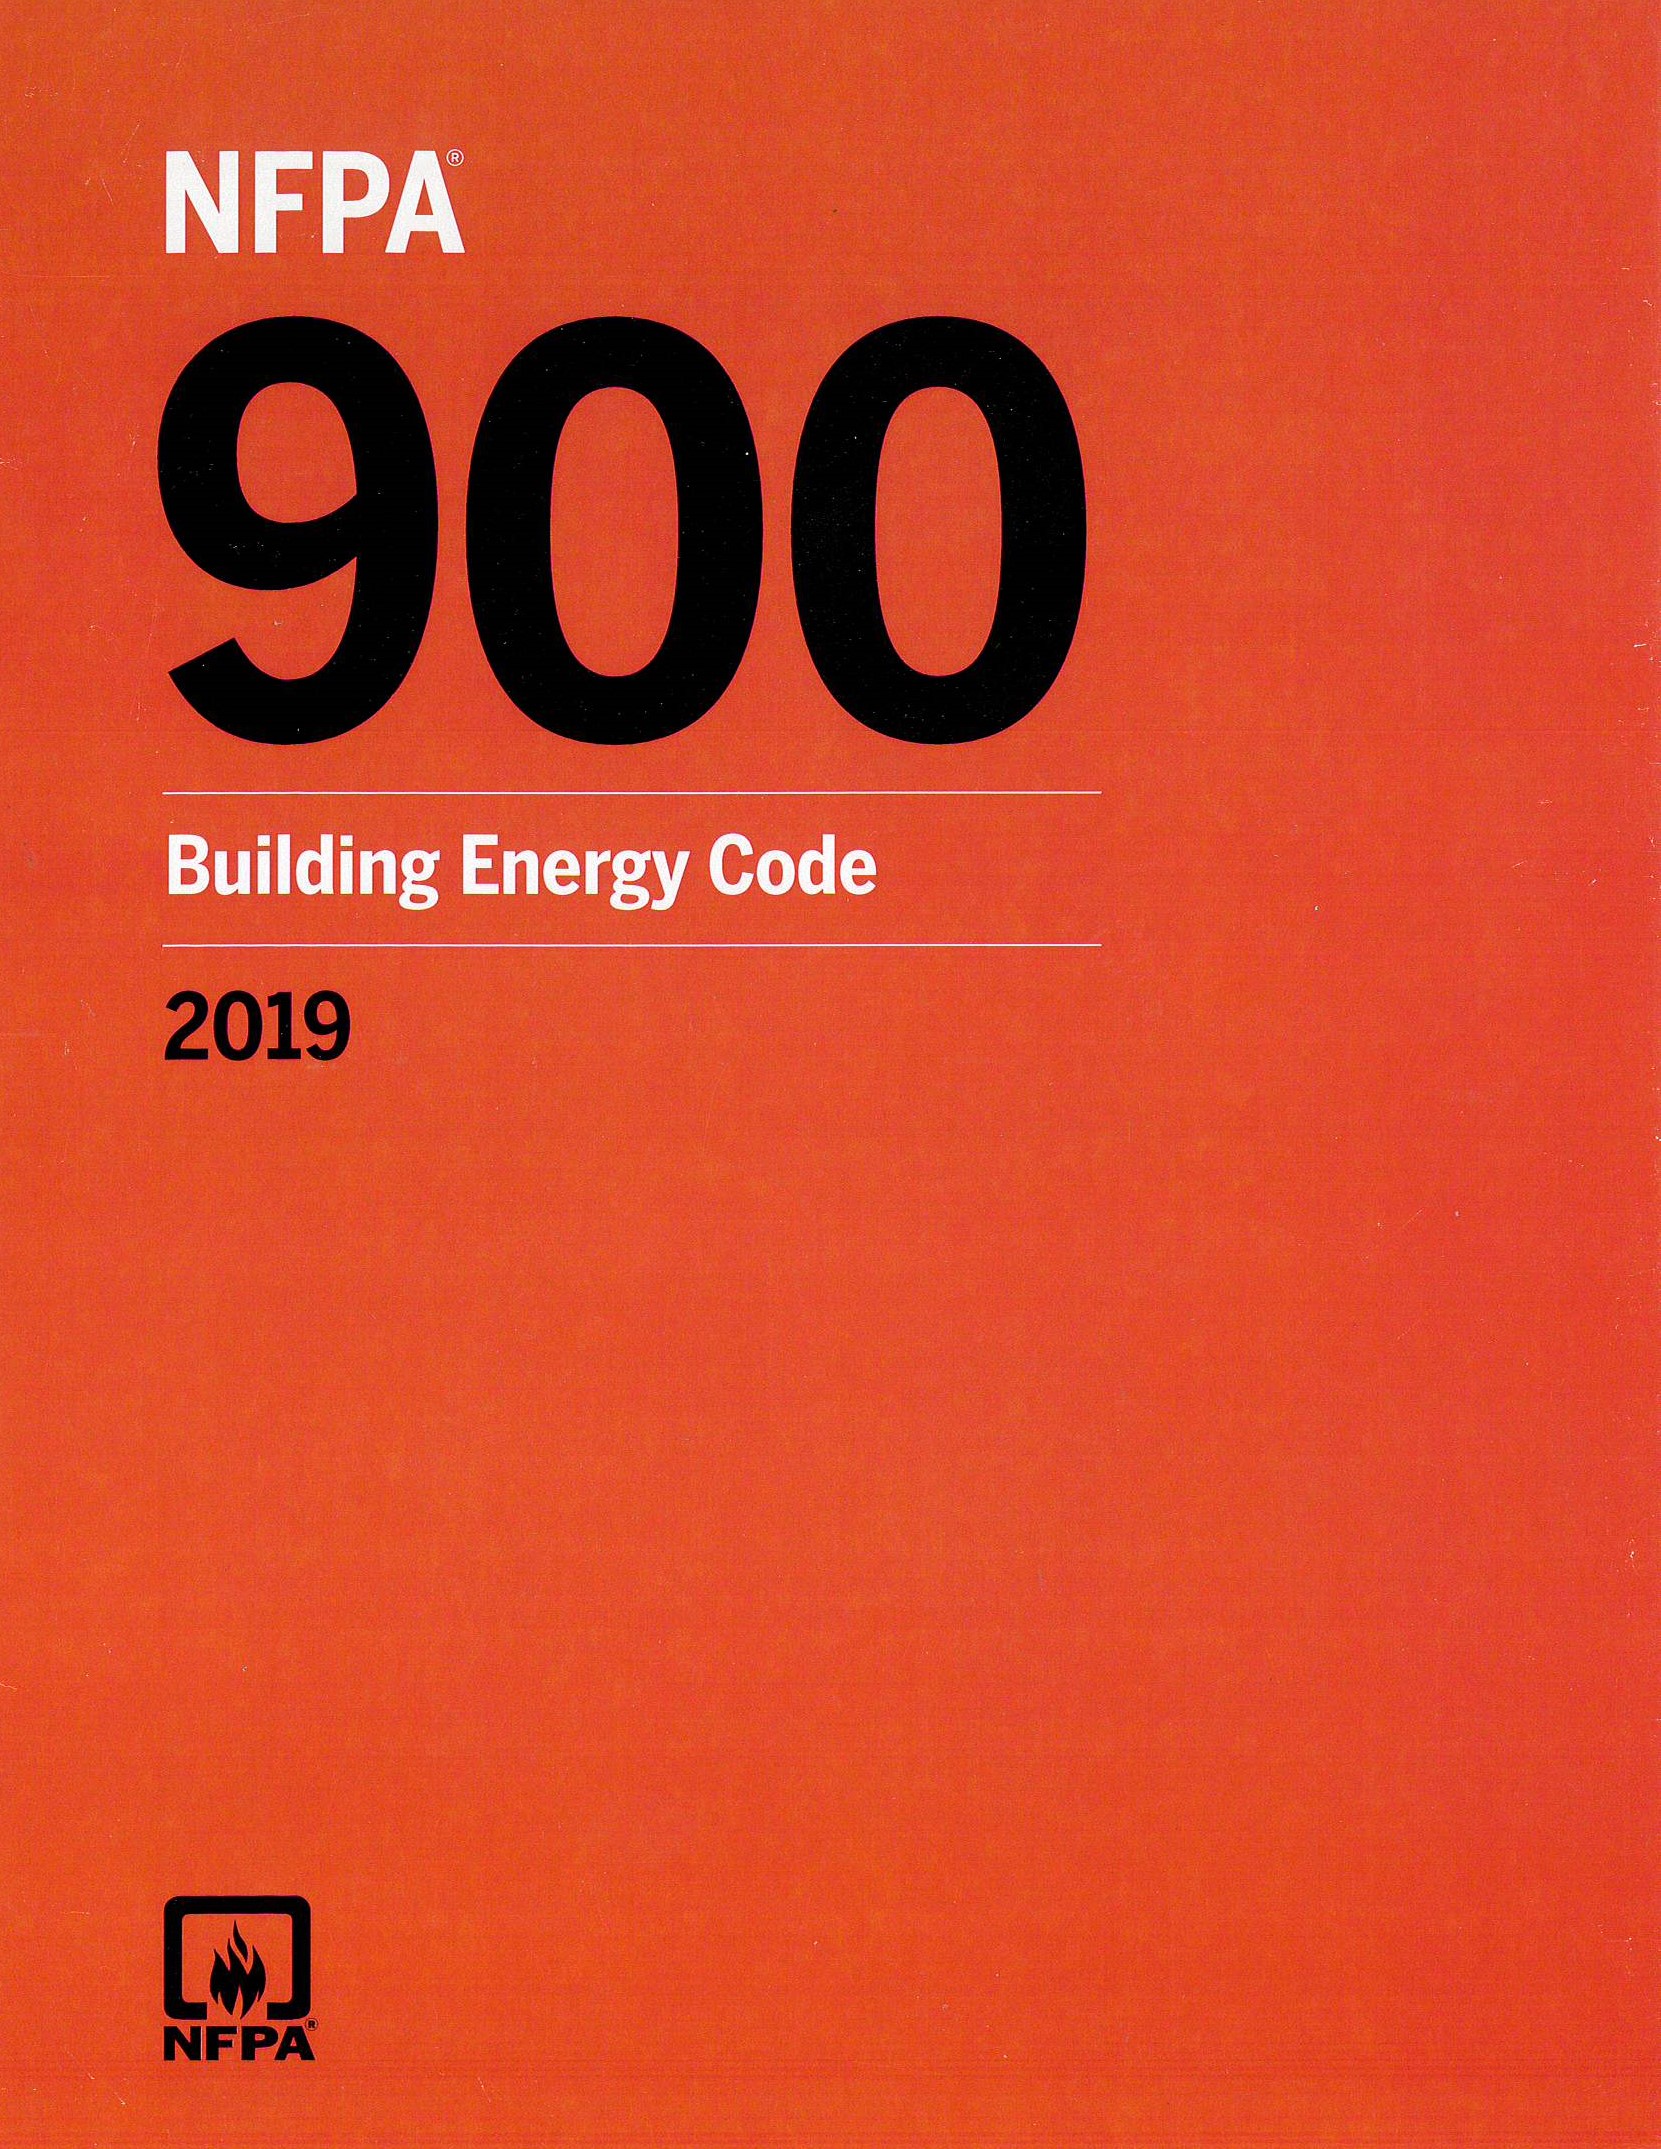 NFPA 900 2019